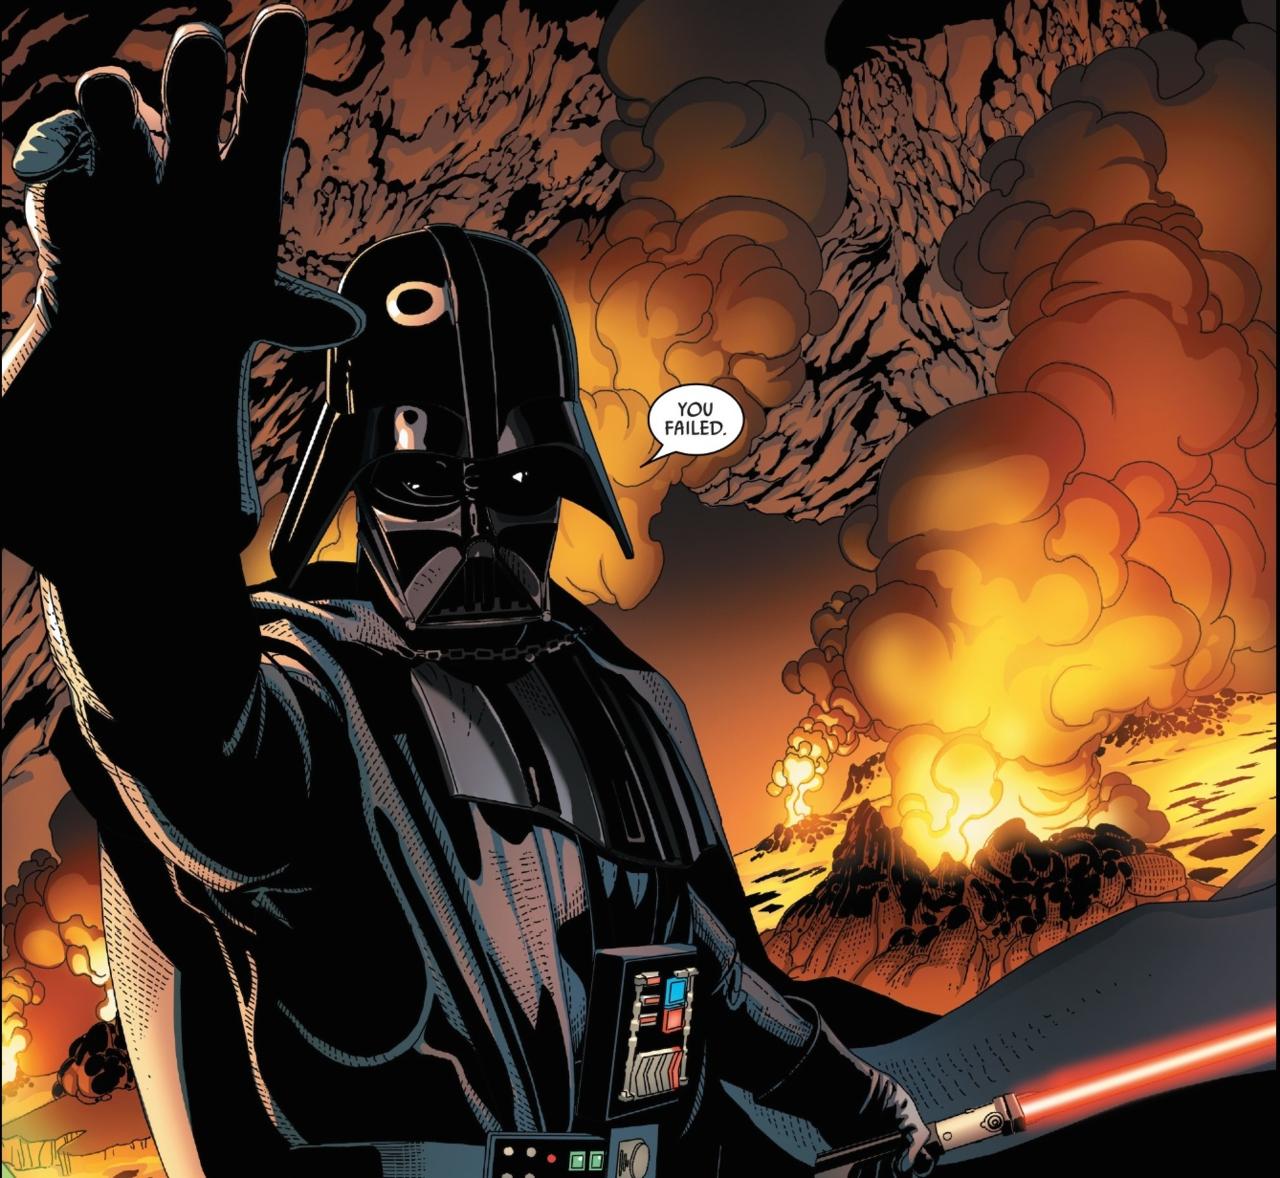 Darth Vader #18